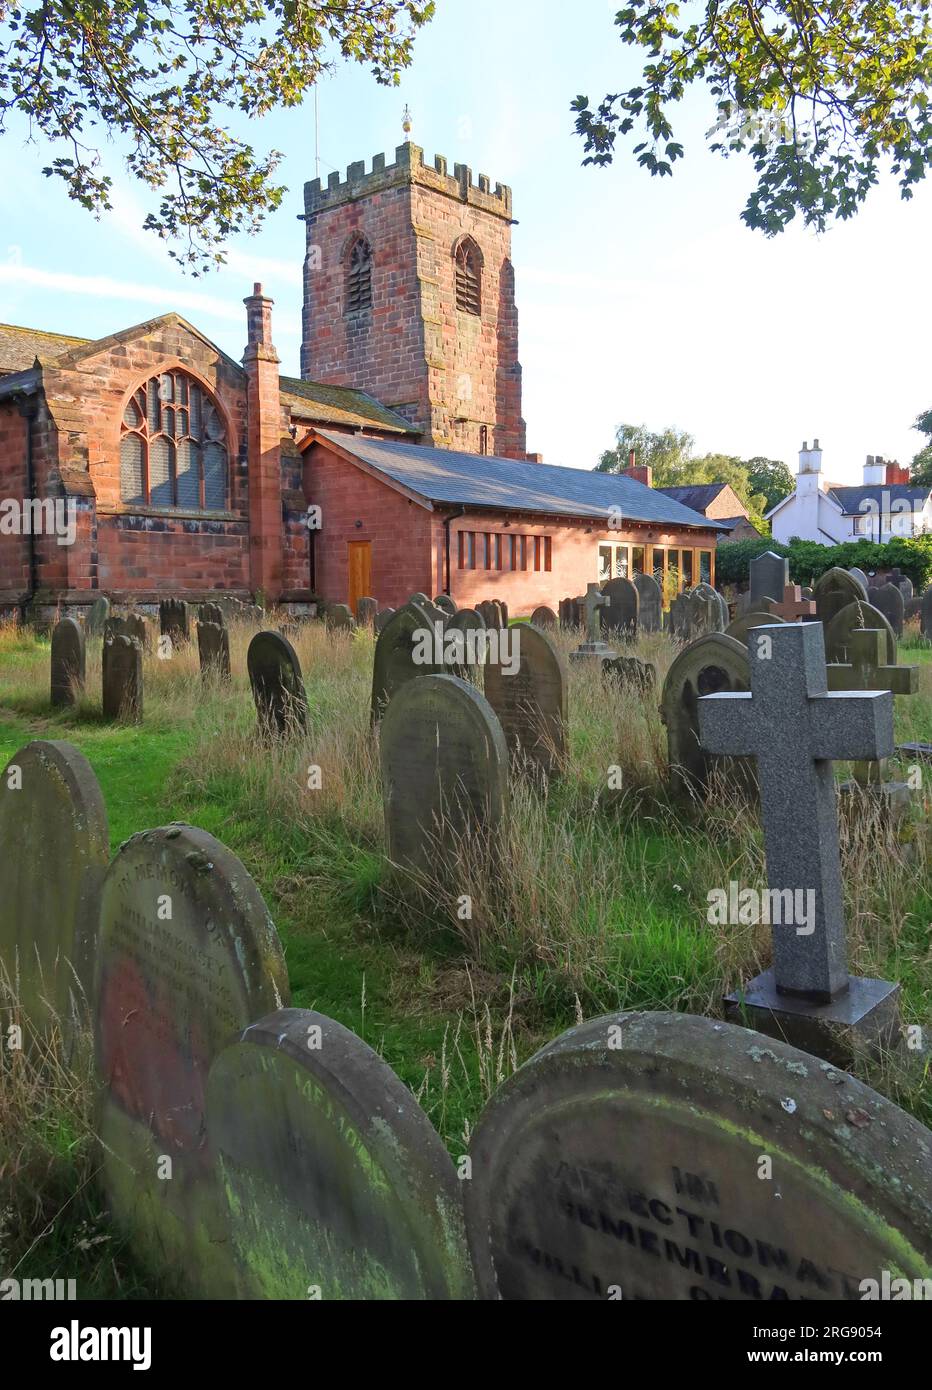 Überwachsener Friedhof der historischen Gemeinde St. Wilfrids Kirche am Abend, Church Lane, Grappenhall Village, Warrington, Cheshire, England, WA4 3EP Stockfoto